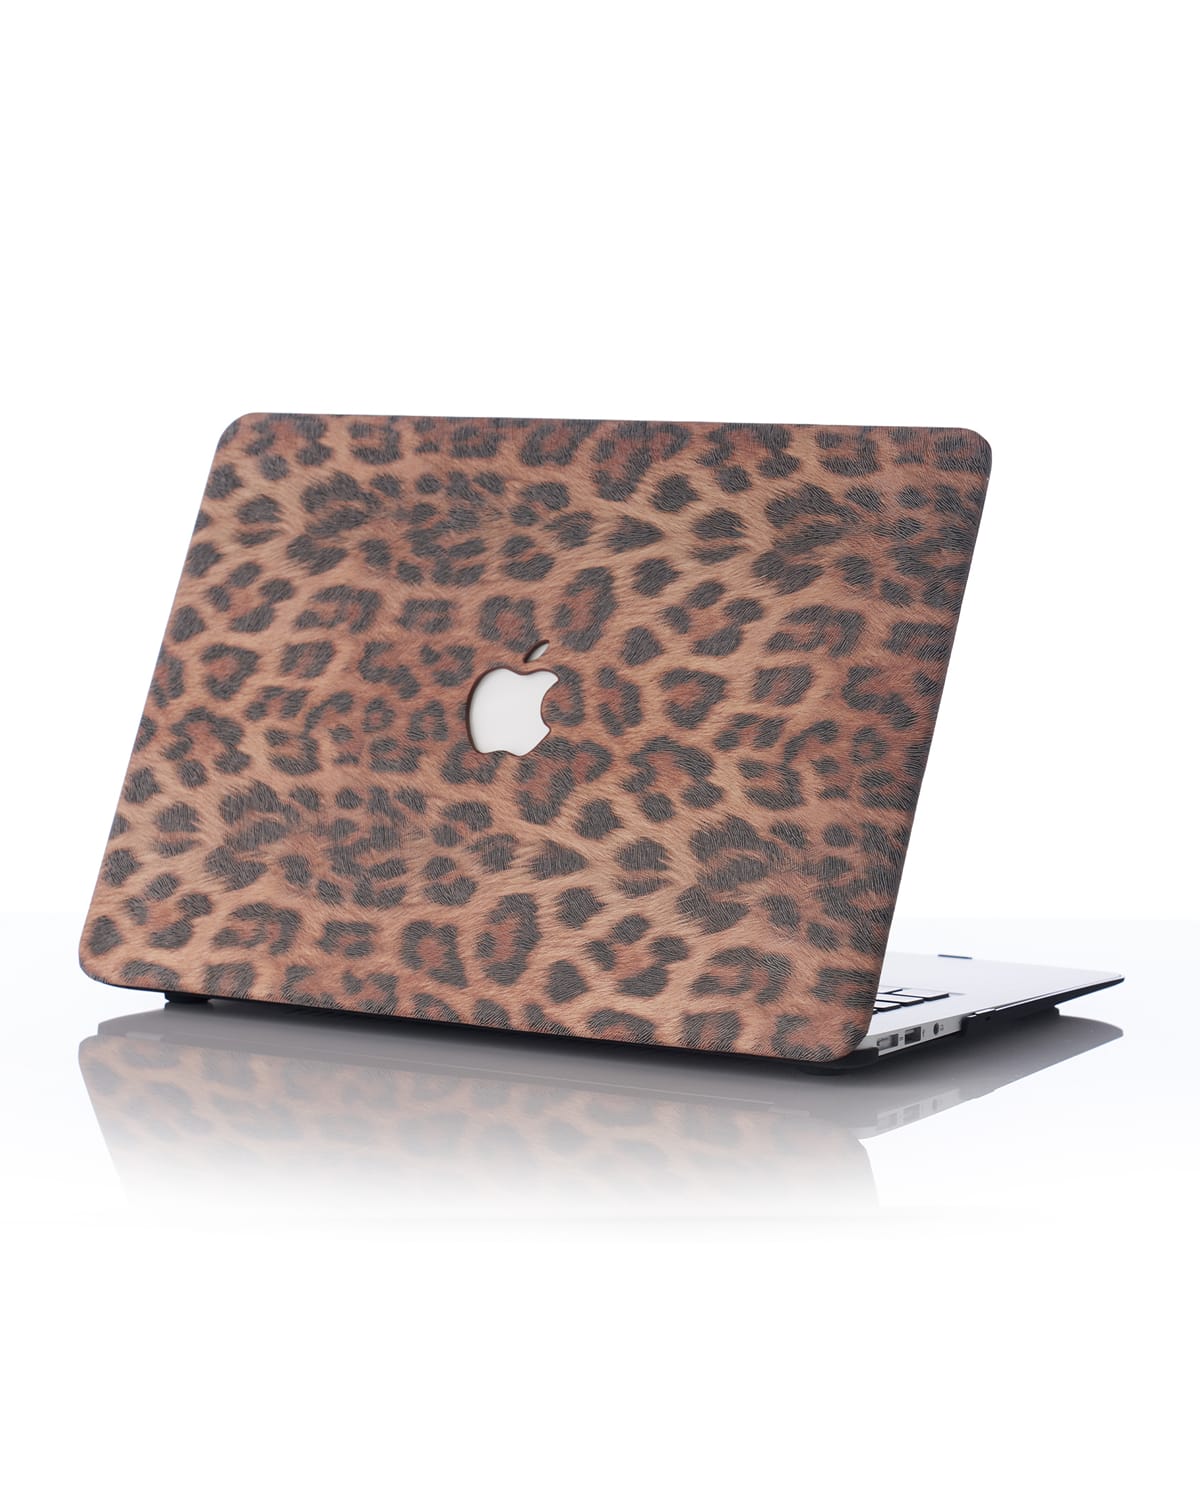 Chic Geeks Animal 13" Macbook Pro With Touchbar Case In Leopard